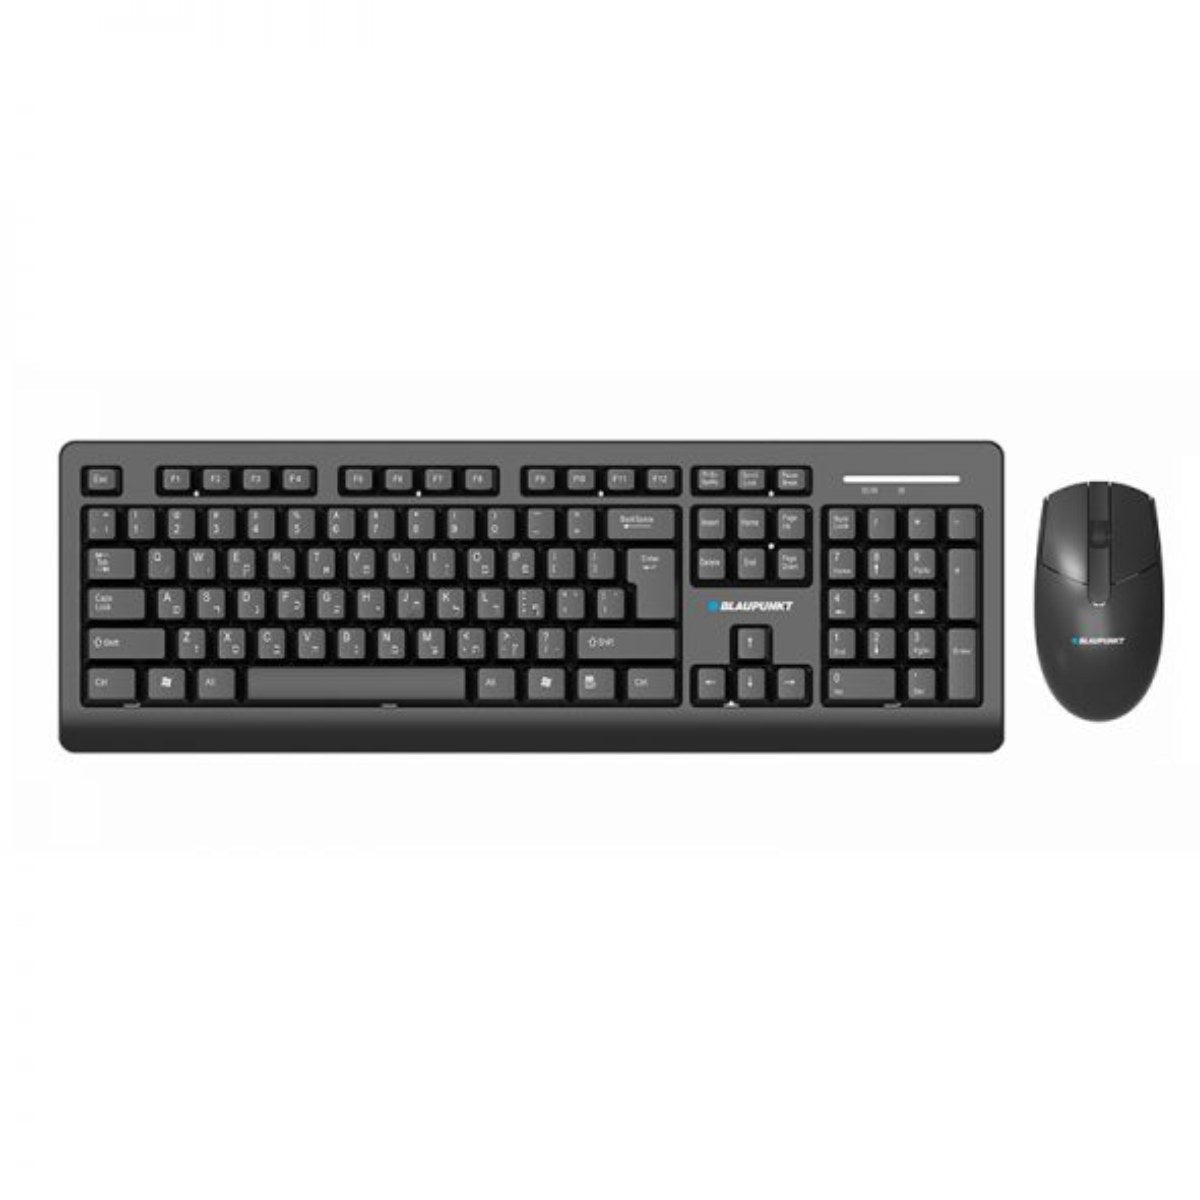 Blaupunket BP7000  wireless keyboard & Mouse| لوحة مفاتيح وماوس لاسلكي بلوبنكت